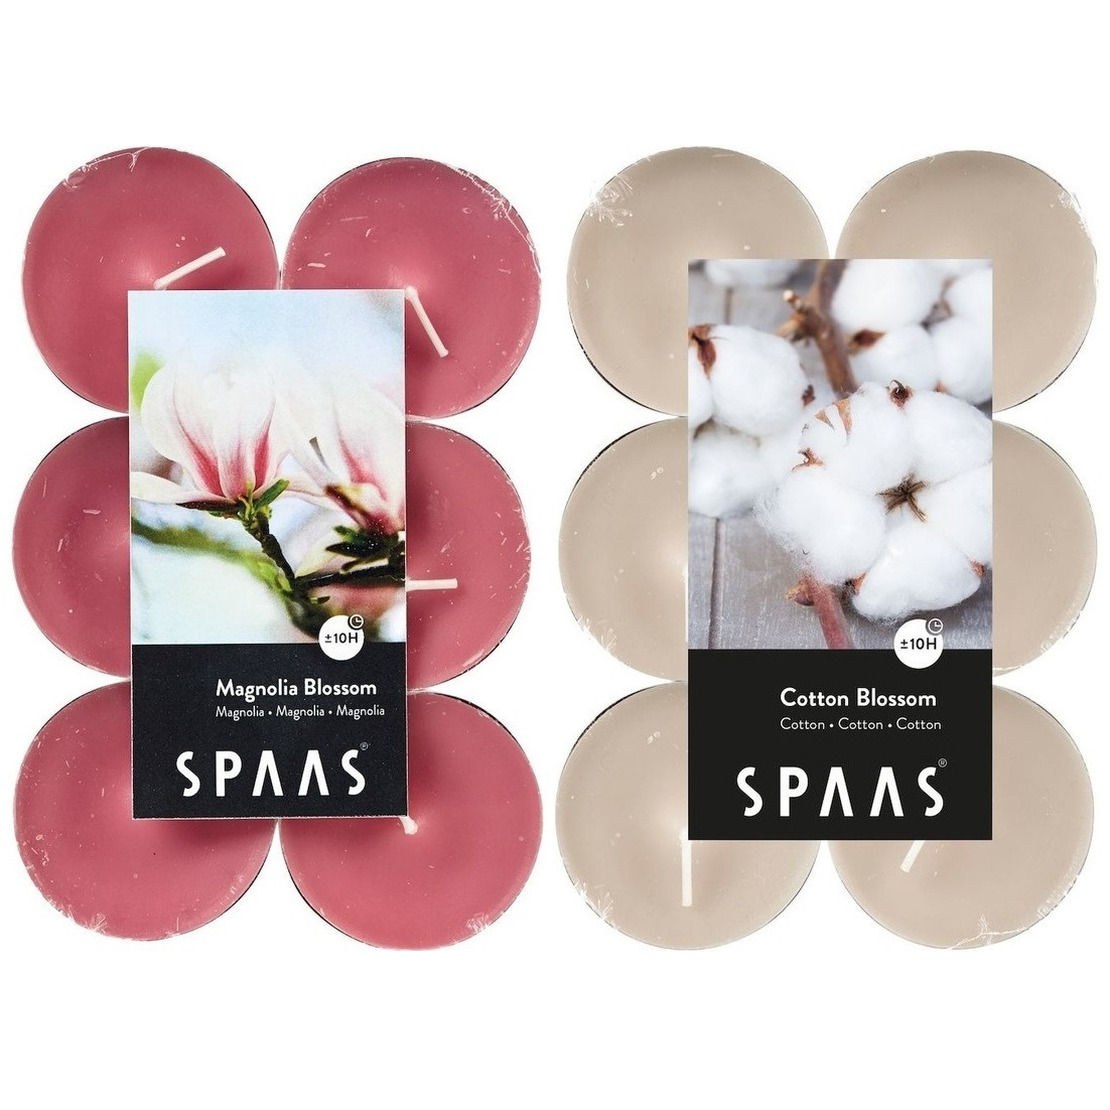 Candles by Spaas geurkaarsen 24x stuks in 2 geuren Blossom Flowers en Magnolia Bloesem